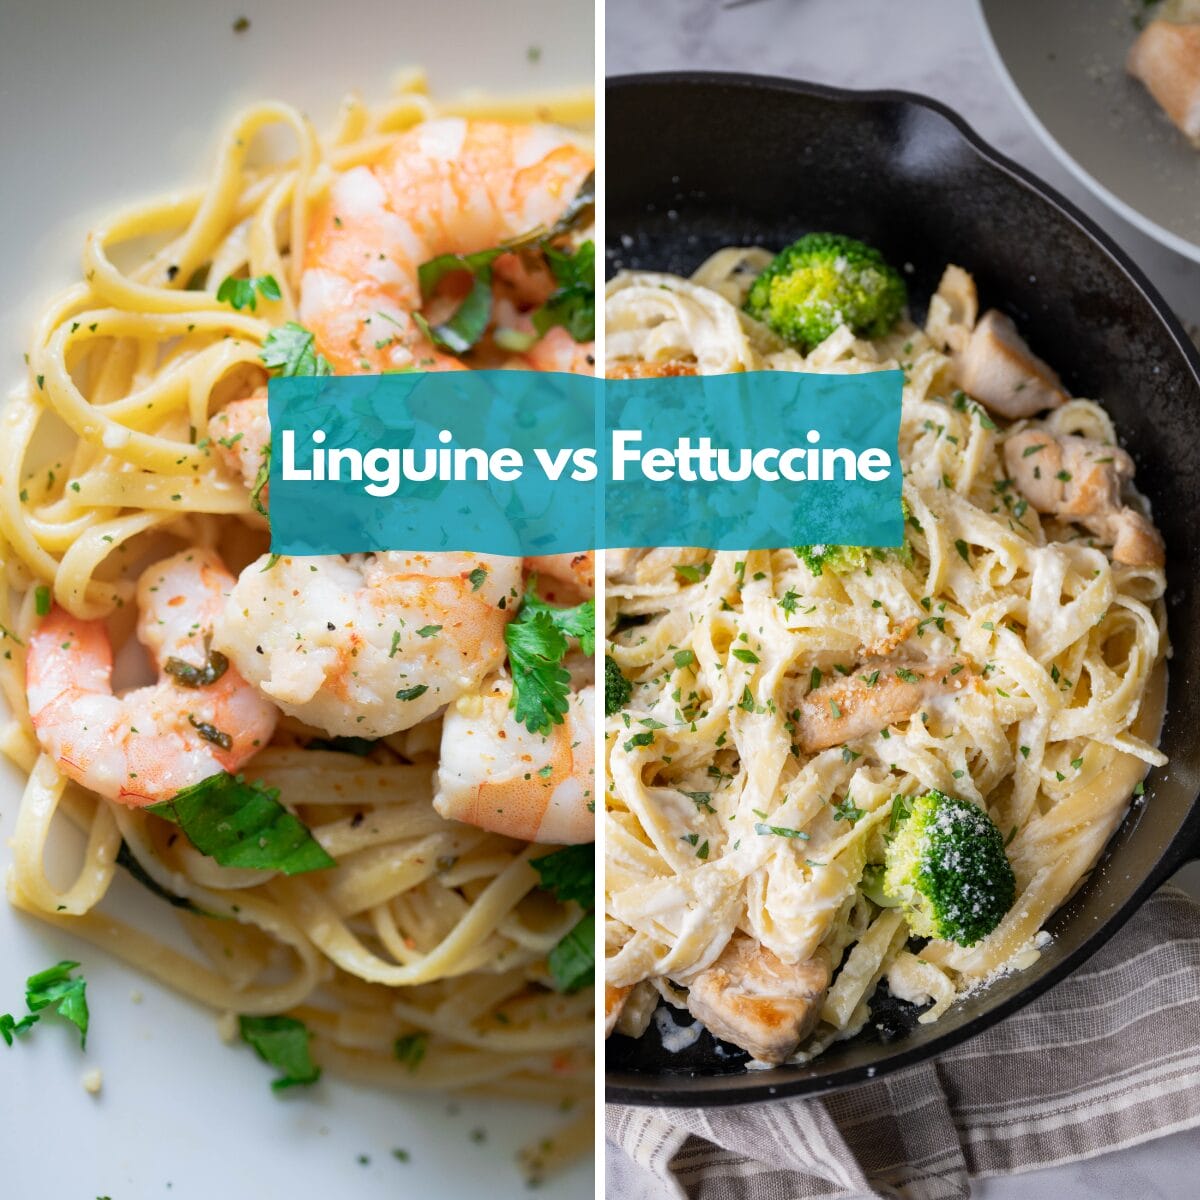 Linguine vs Fettuccine